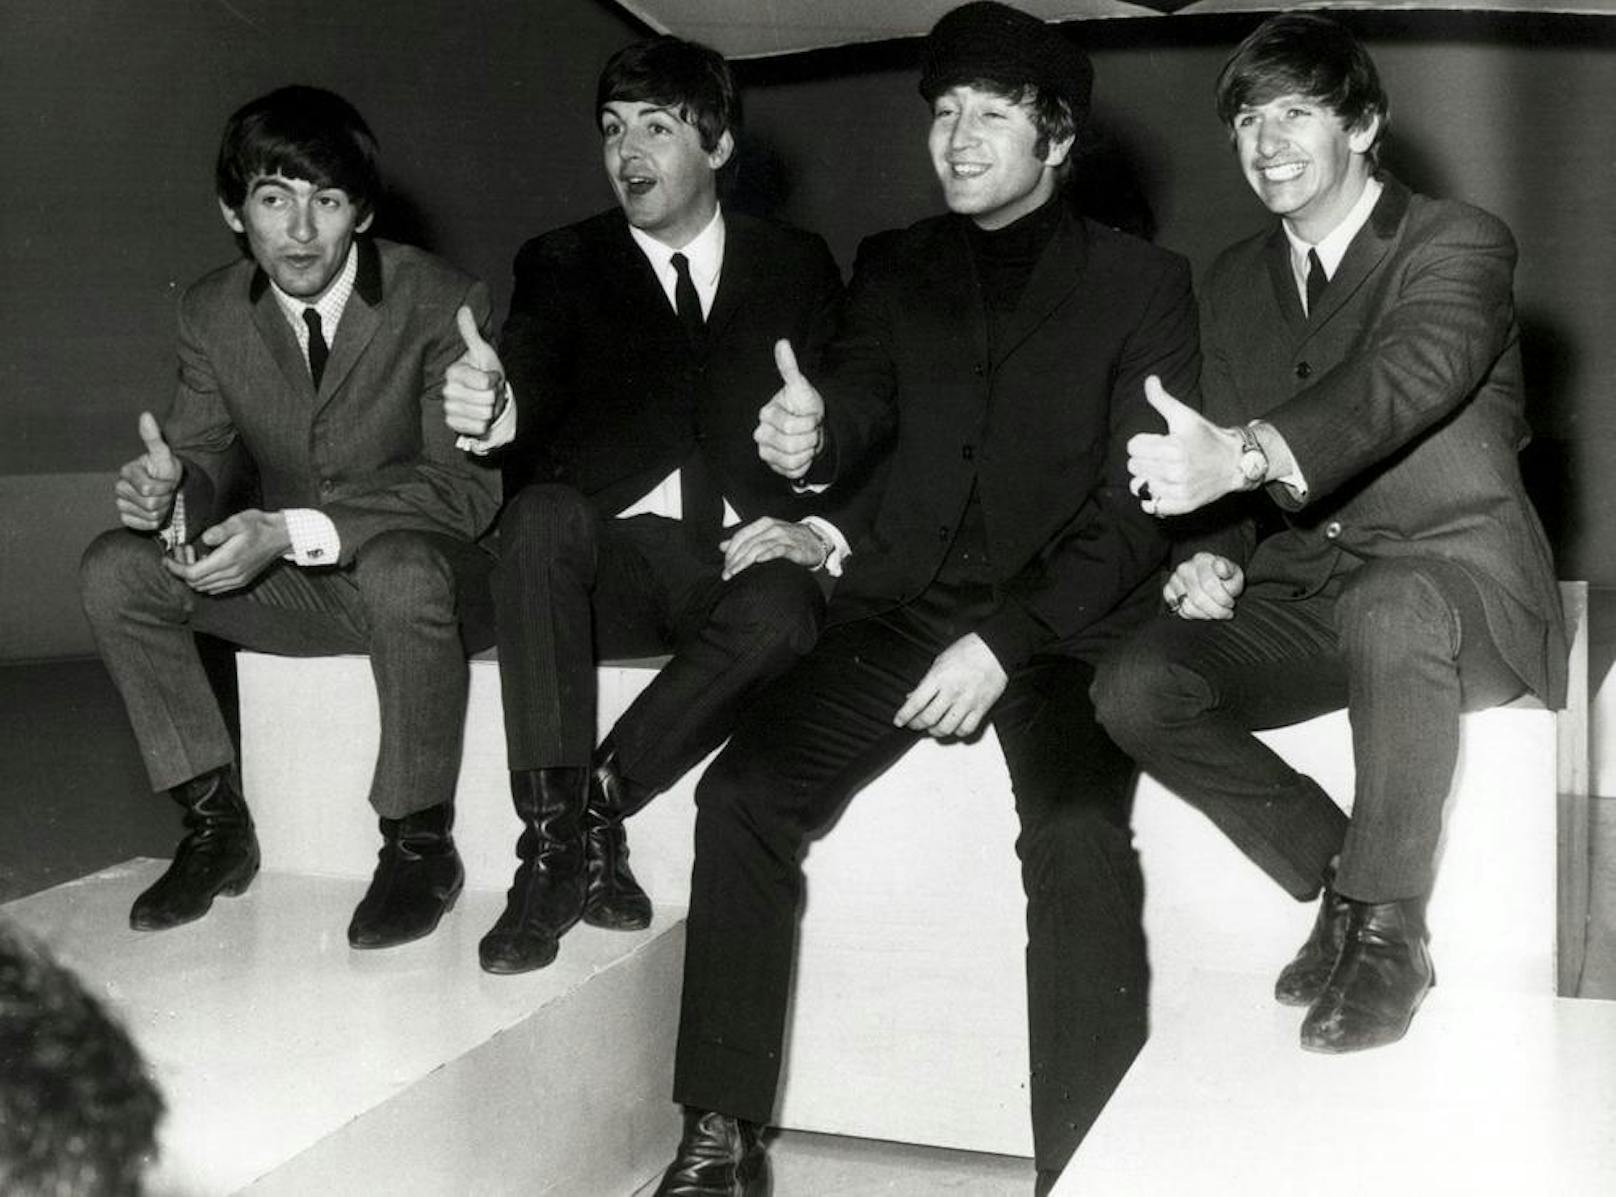 Beide Titel landeten damit schneller hintereinander auf Platz eins als die beiden Beatles-Veröffentlichungen "Get Back" und "The Ballad of John and Yoko" aus dem Jahr 1969.